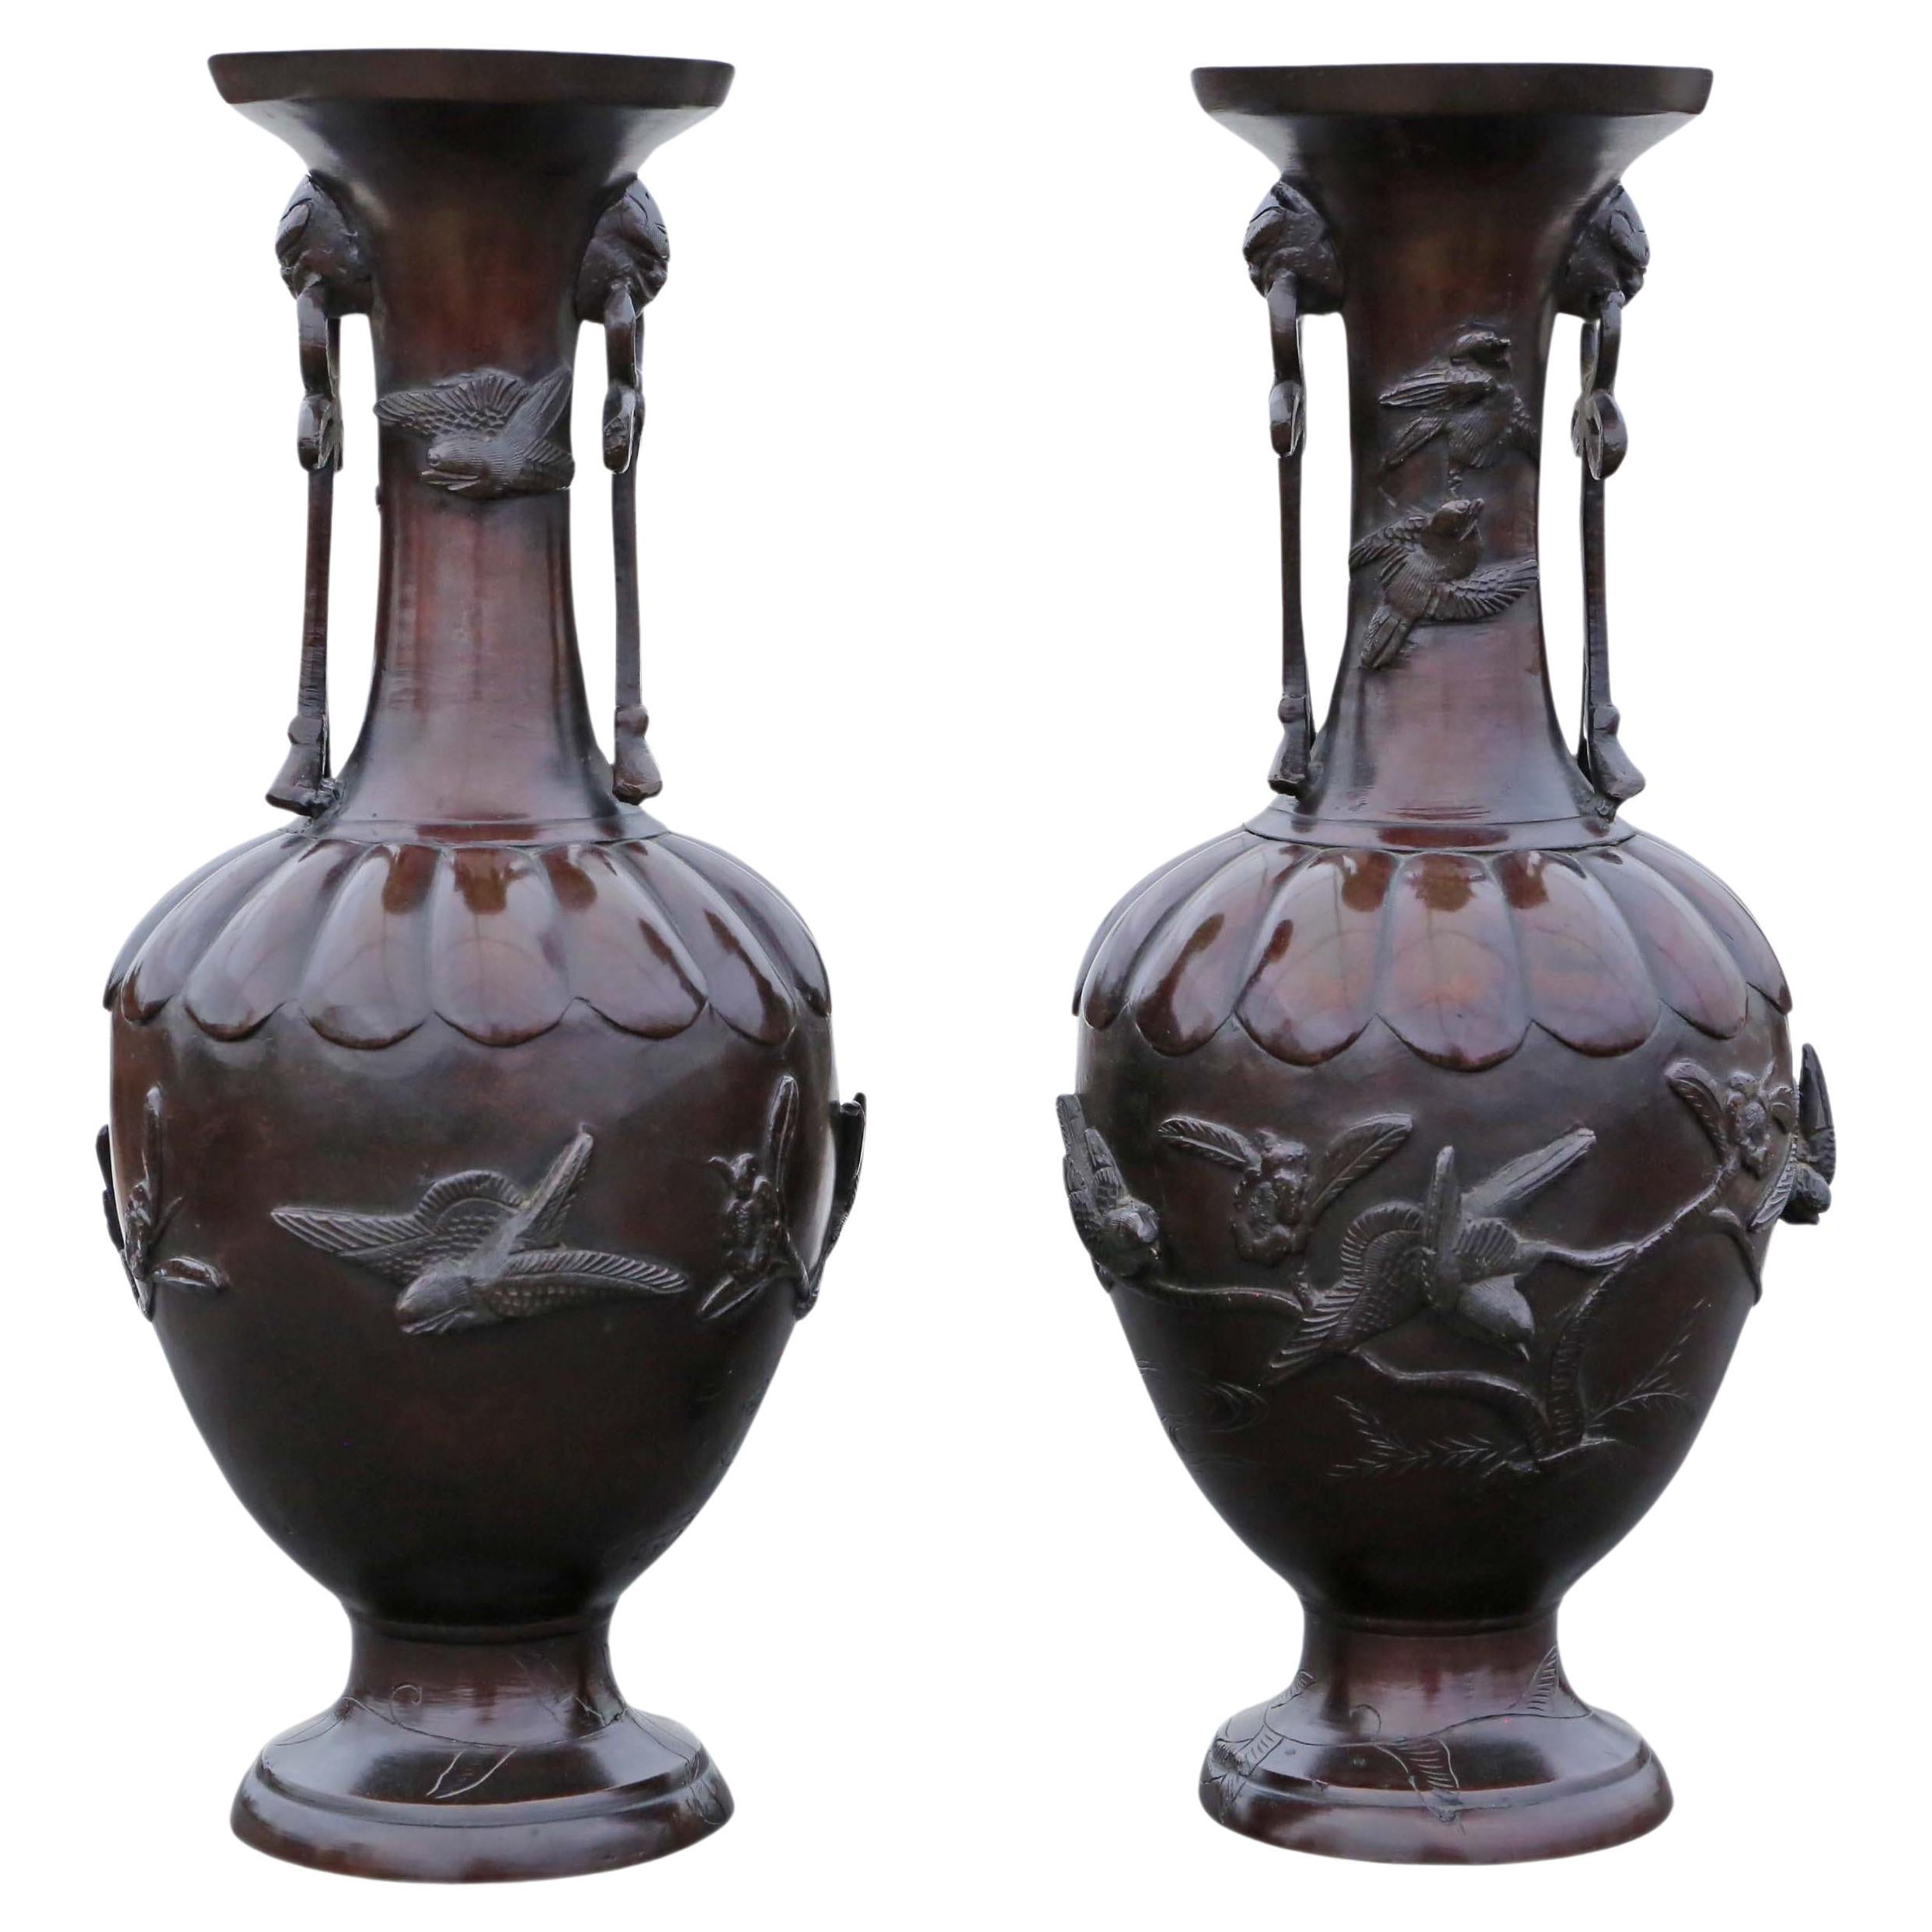 Grande paire de vases japonais en bronze de qualité supérieure datant de 1903, période Meiji